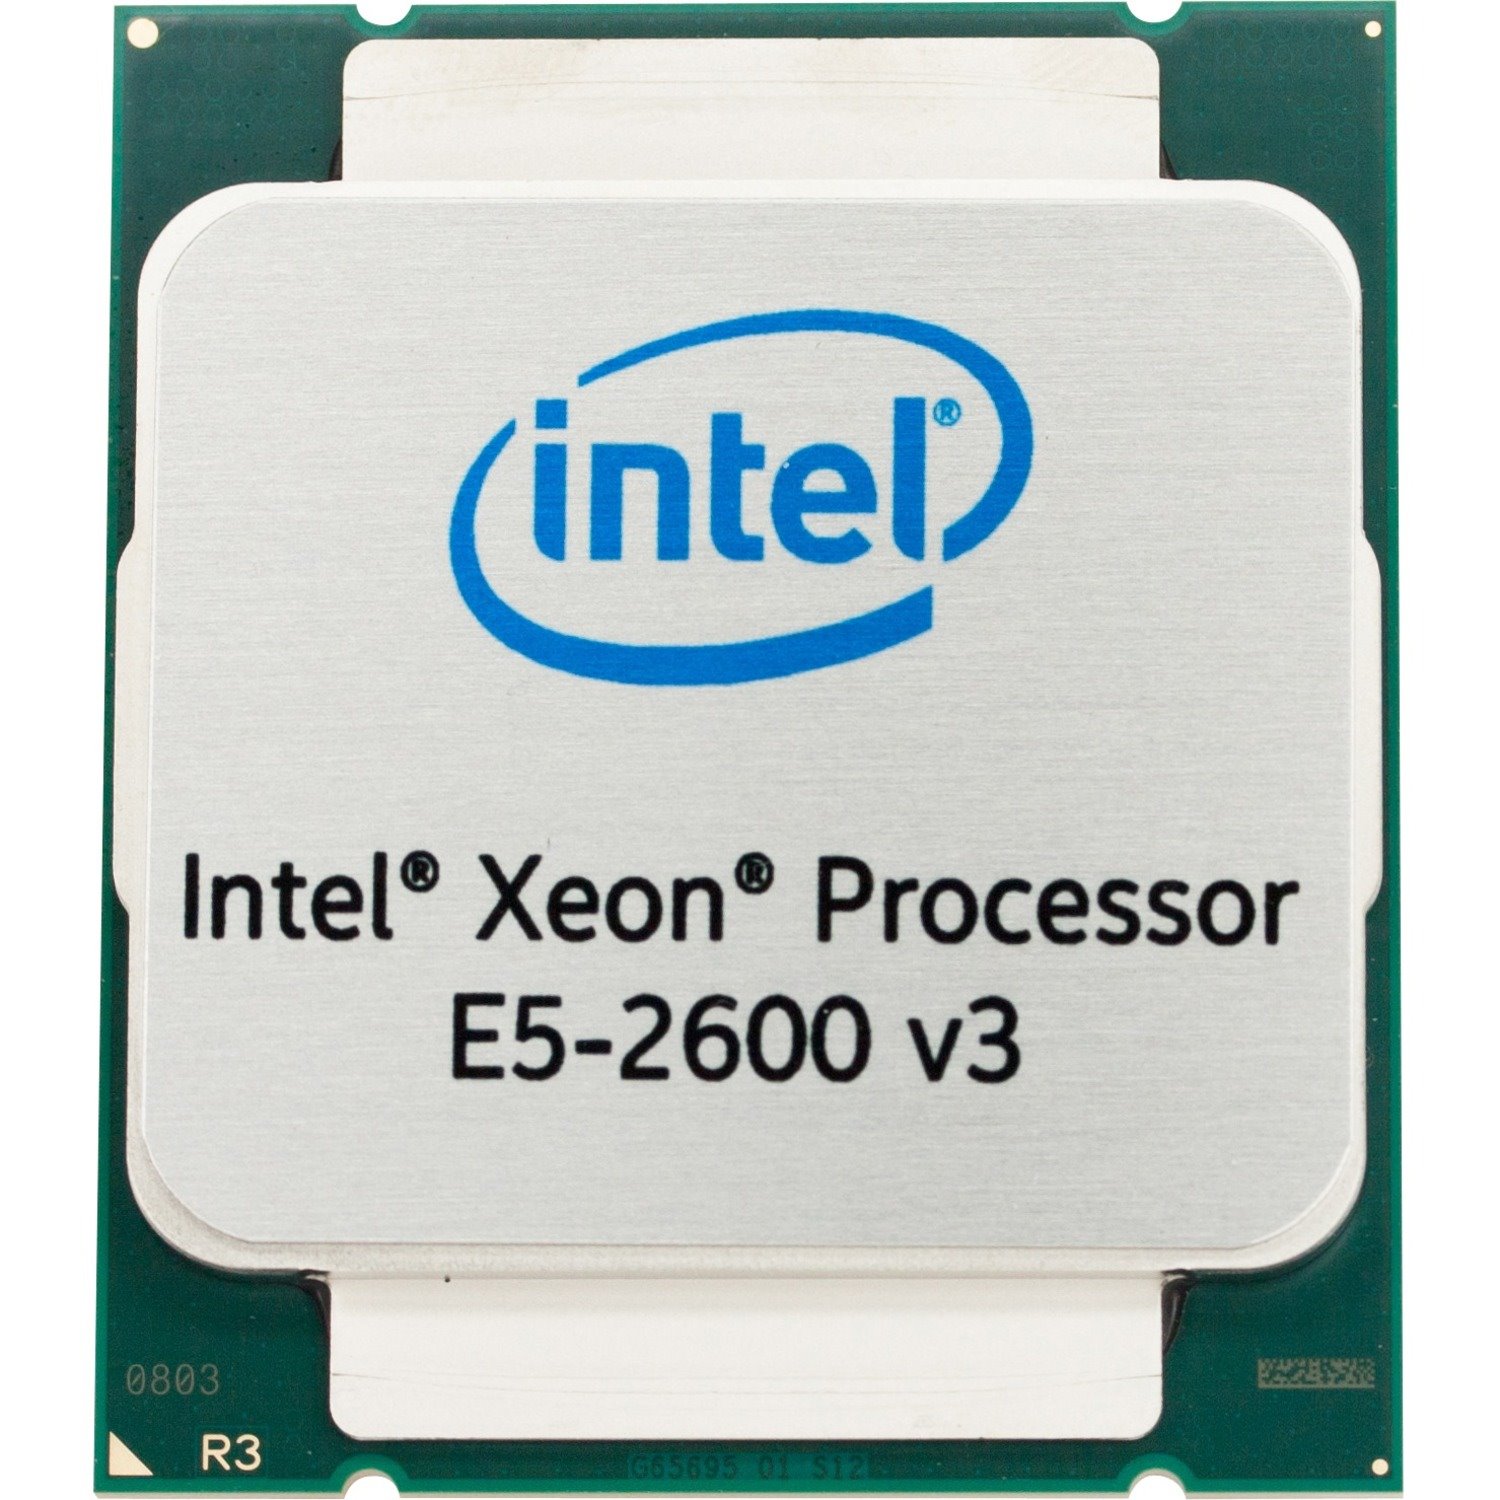 Intel Xeon E5-2600 v3 E5-2690 v3 Dodeca-core (12 Core) 2.60 GHz Processor - Retail Pack